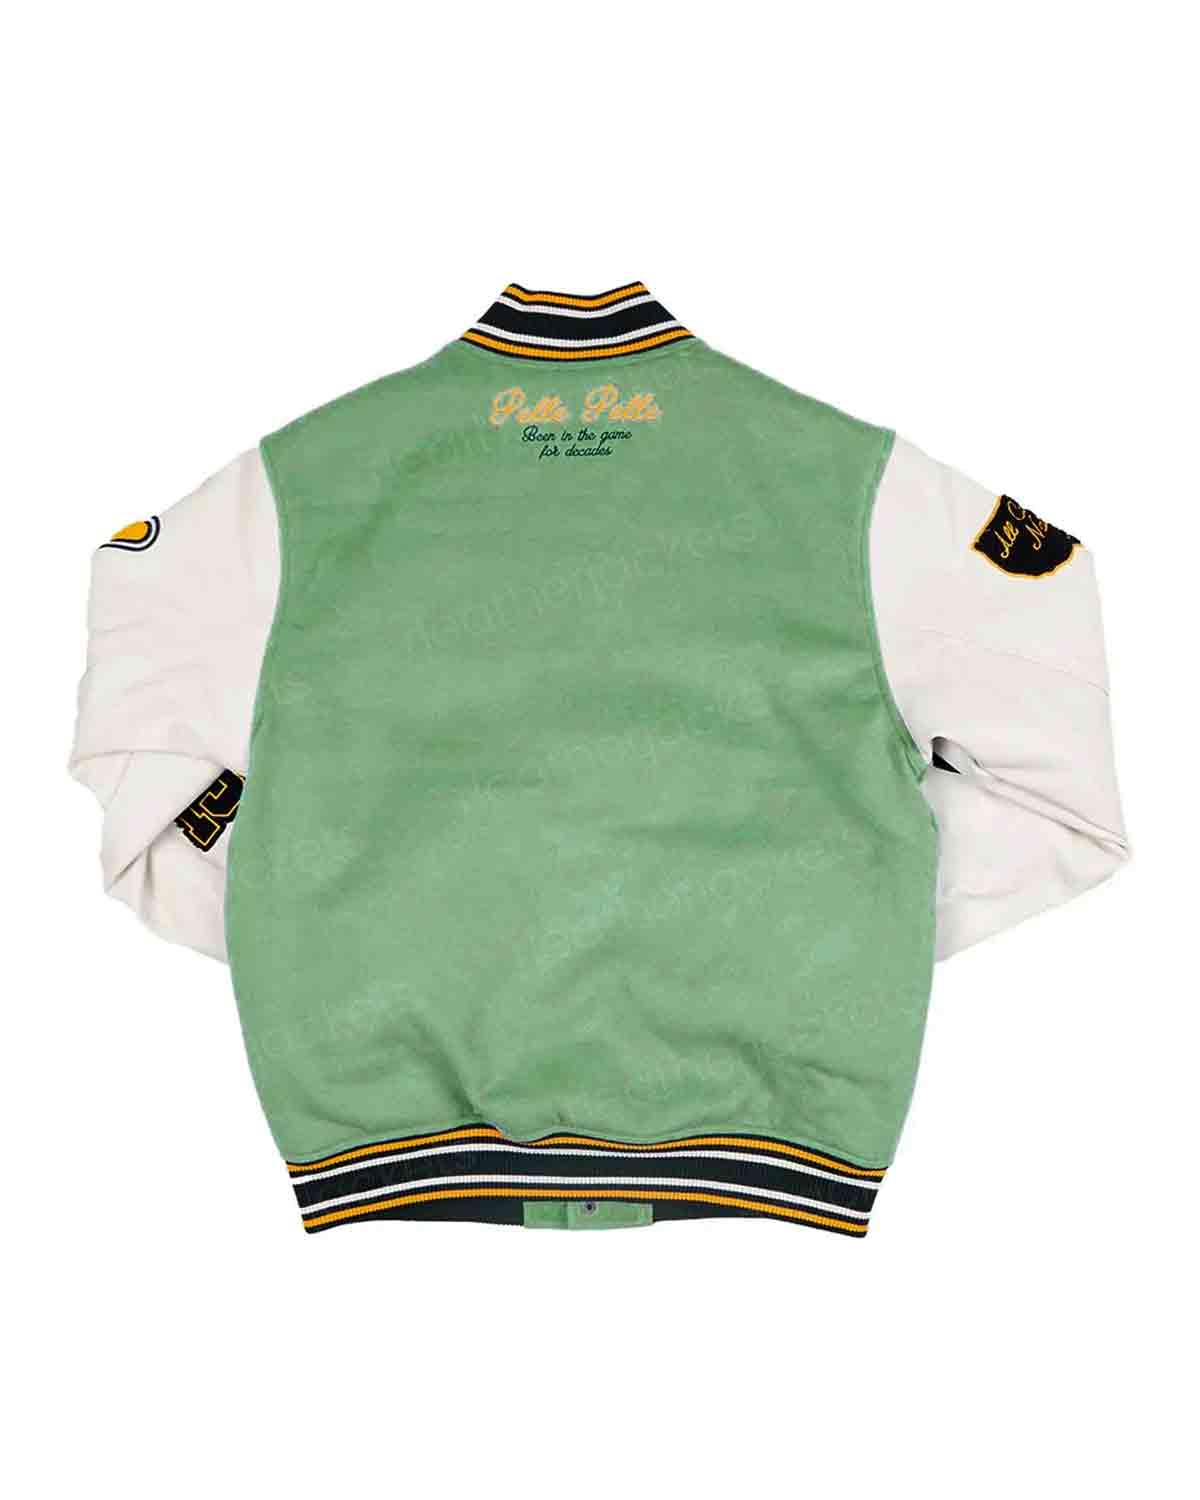 Mens Pelle Pelle World Famous Green Varsity Jacket 